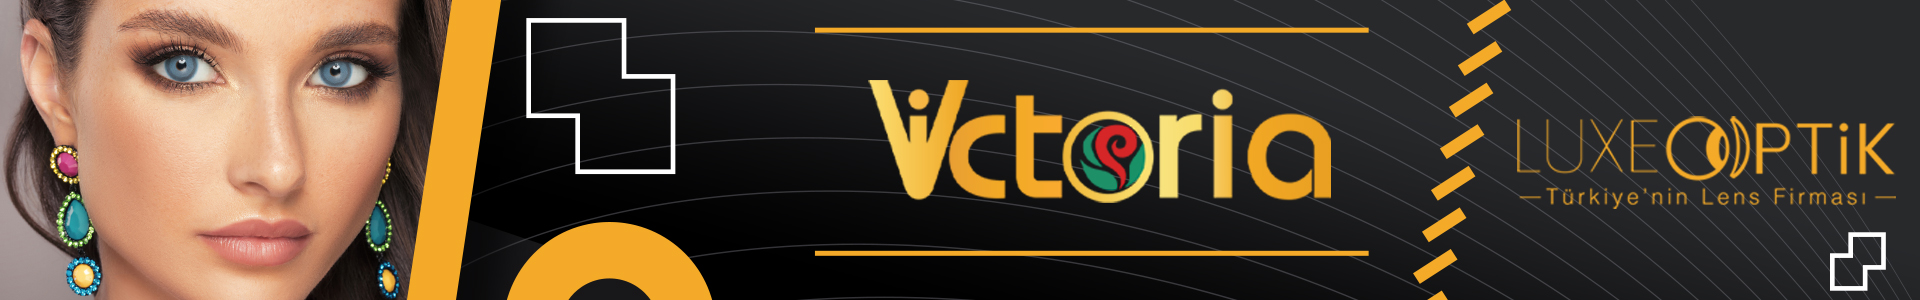 Victoria Renkli Lens | Çeşitleri ve Fiyatları